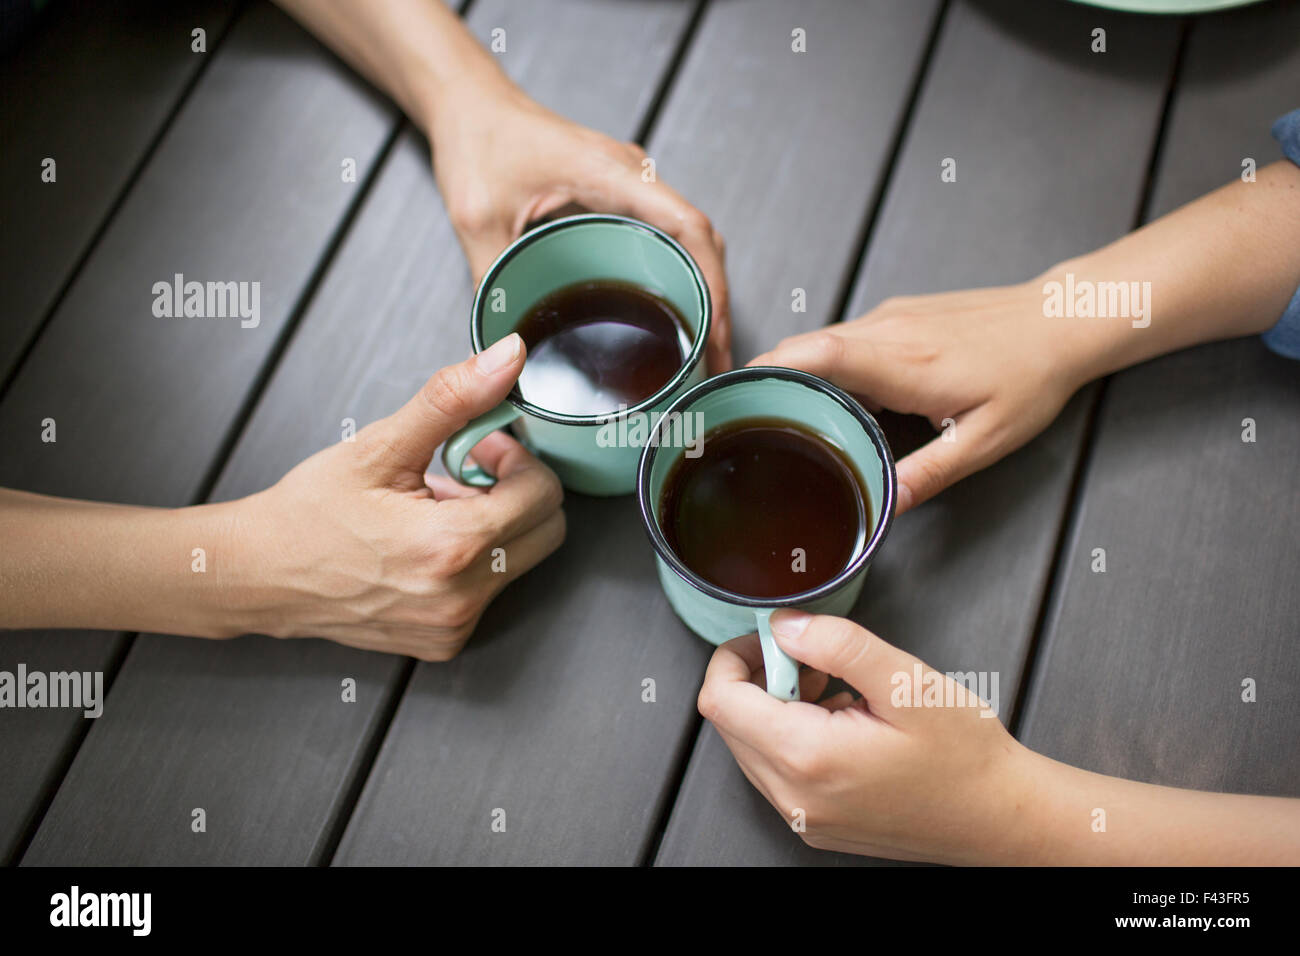 Zwei Personen an einem Tisch sitzen, Kaffee trinken, von oben gesehen. Stockfoto